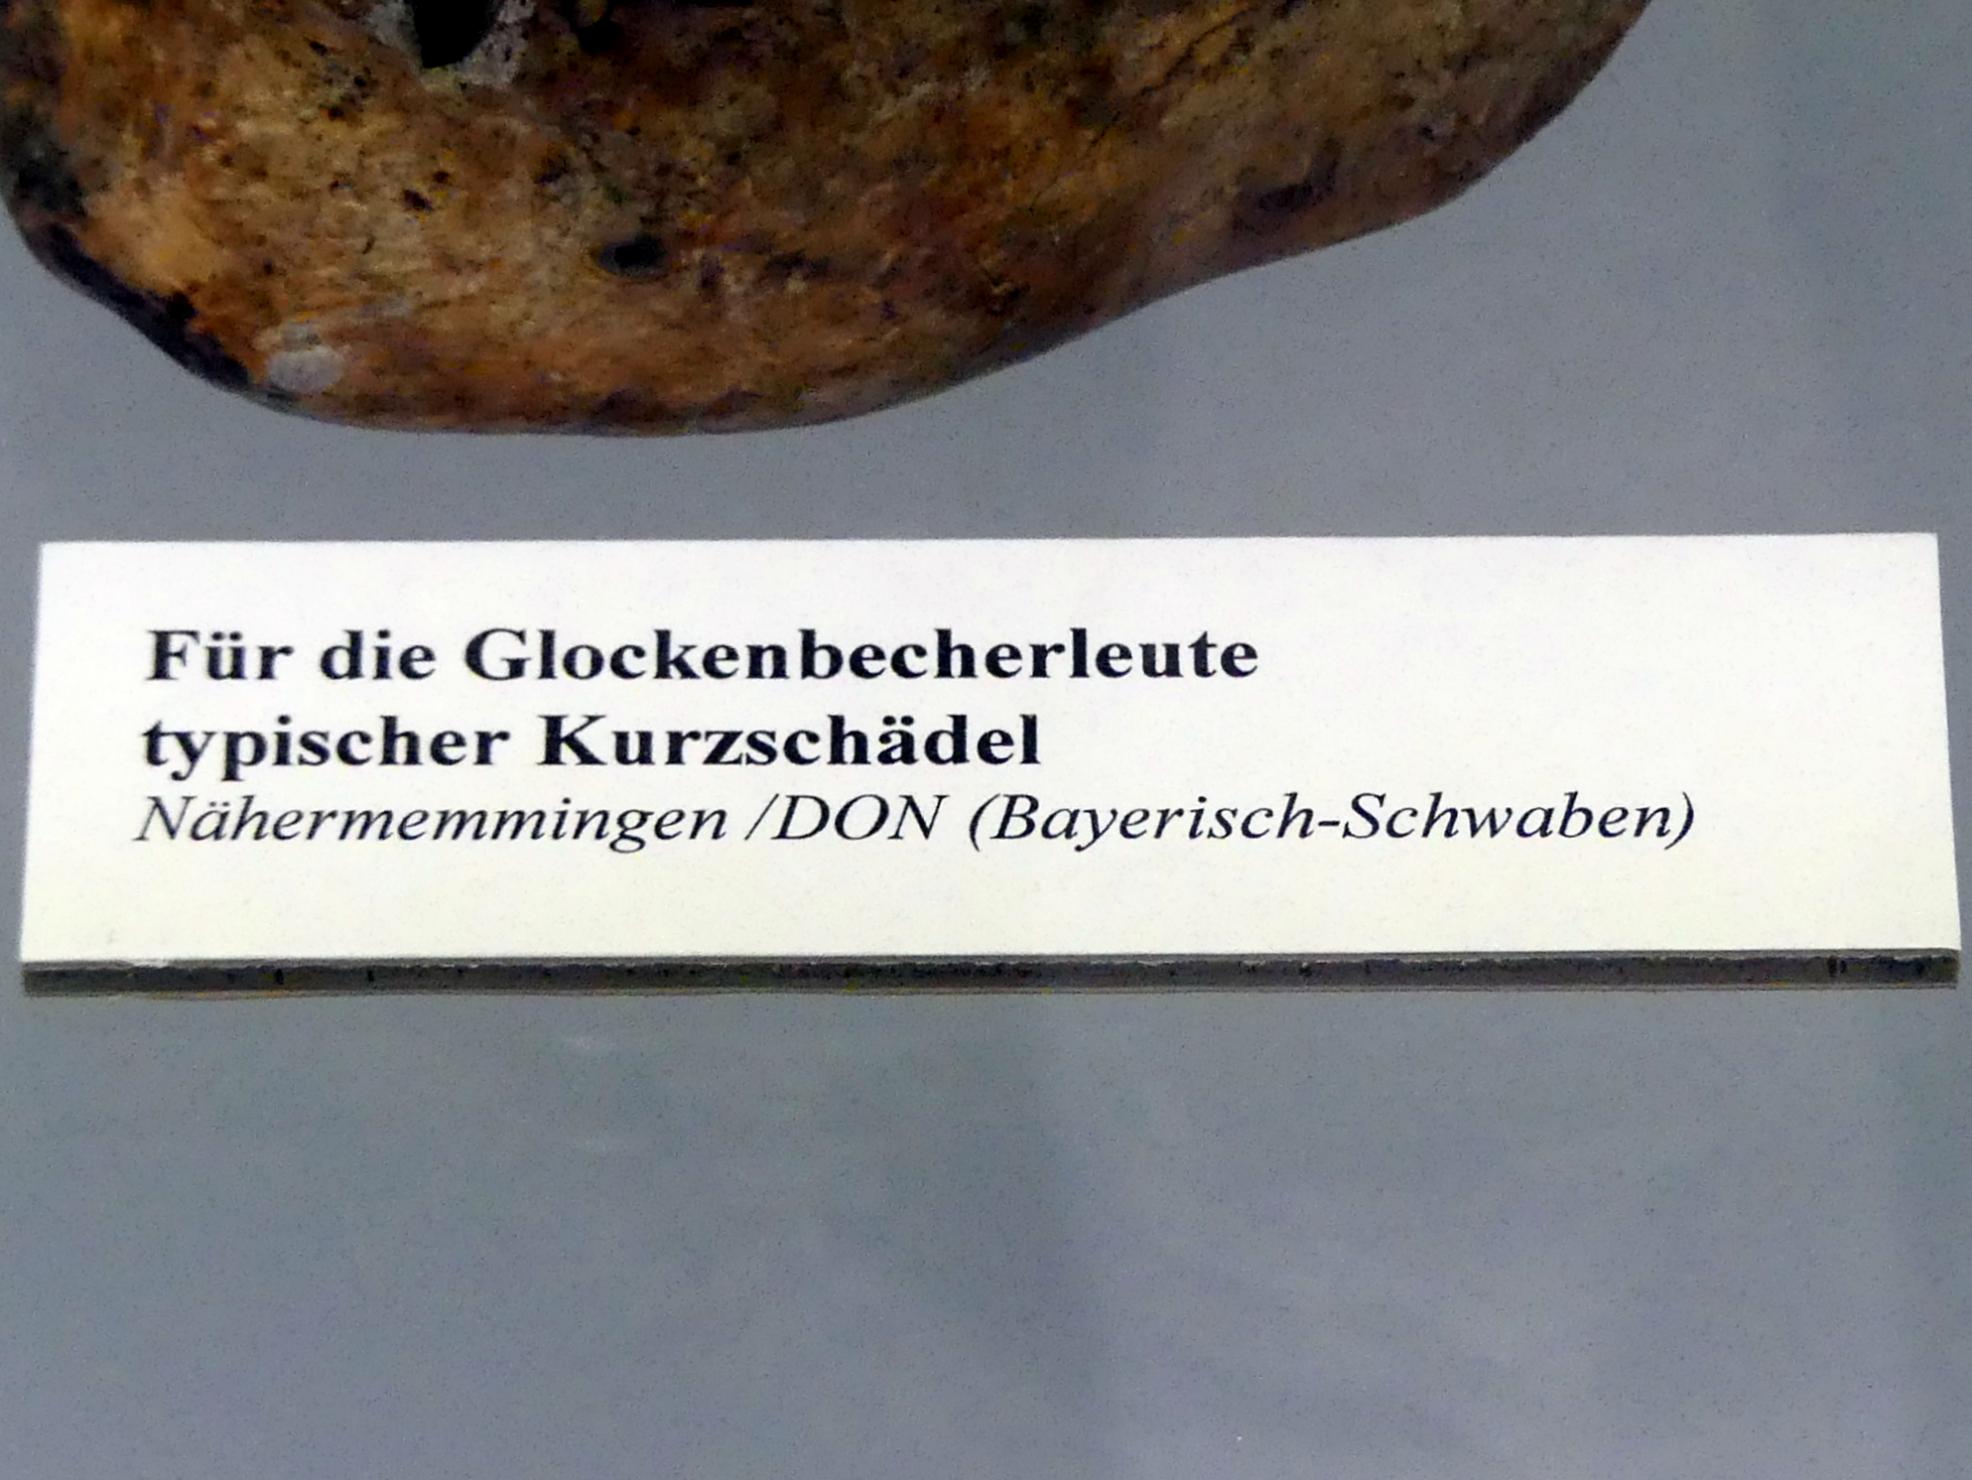 Für die Glockenbecherleute typischer Kurzschädel, Endneolithikum, 2800 - 1700 v. Chr., Bild 3/3